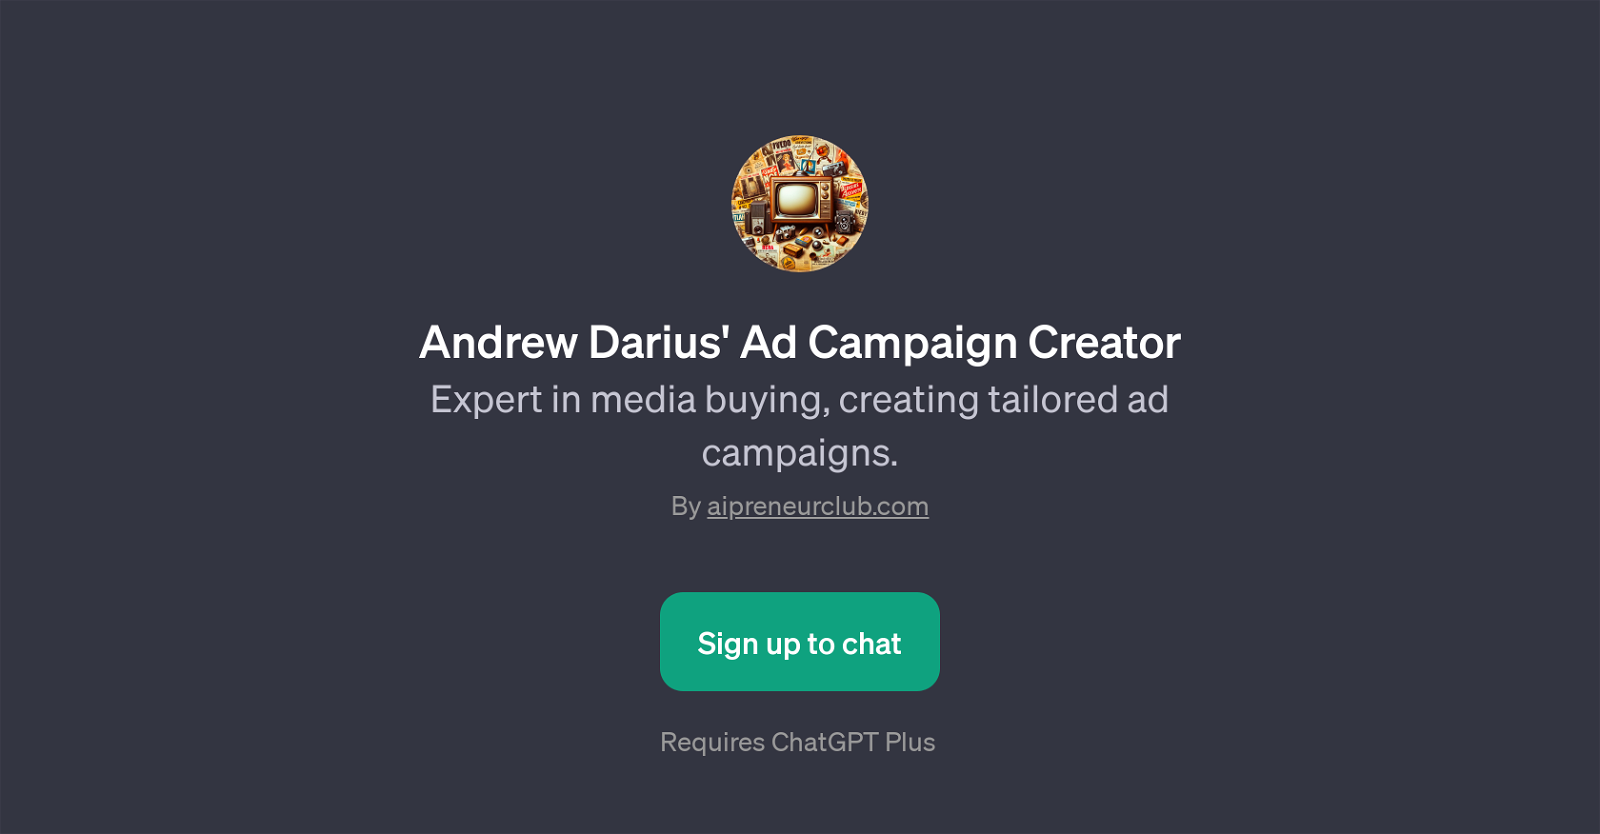 Andrew Darius' Ad Campaign Creator website